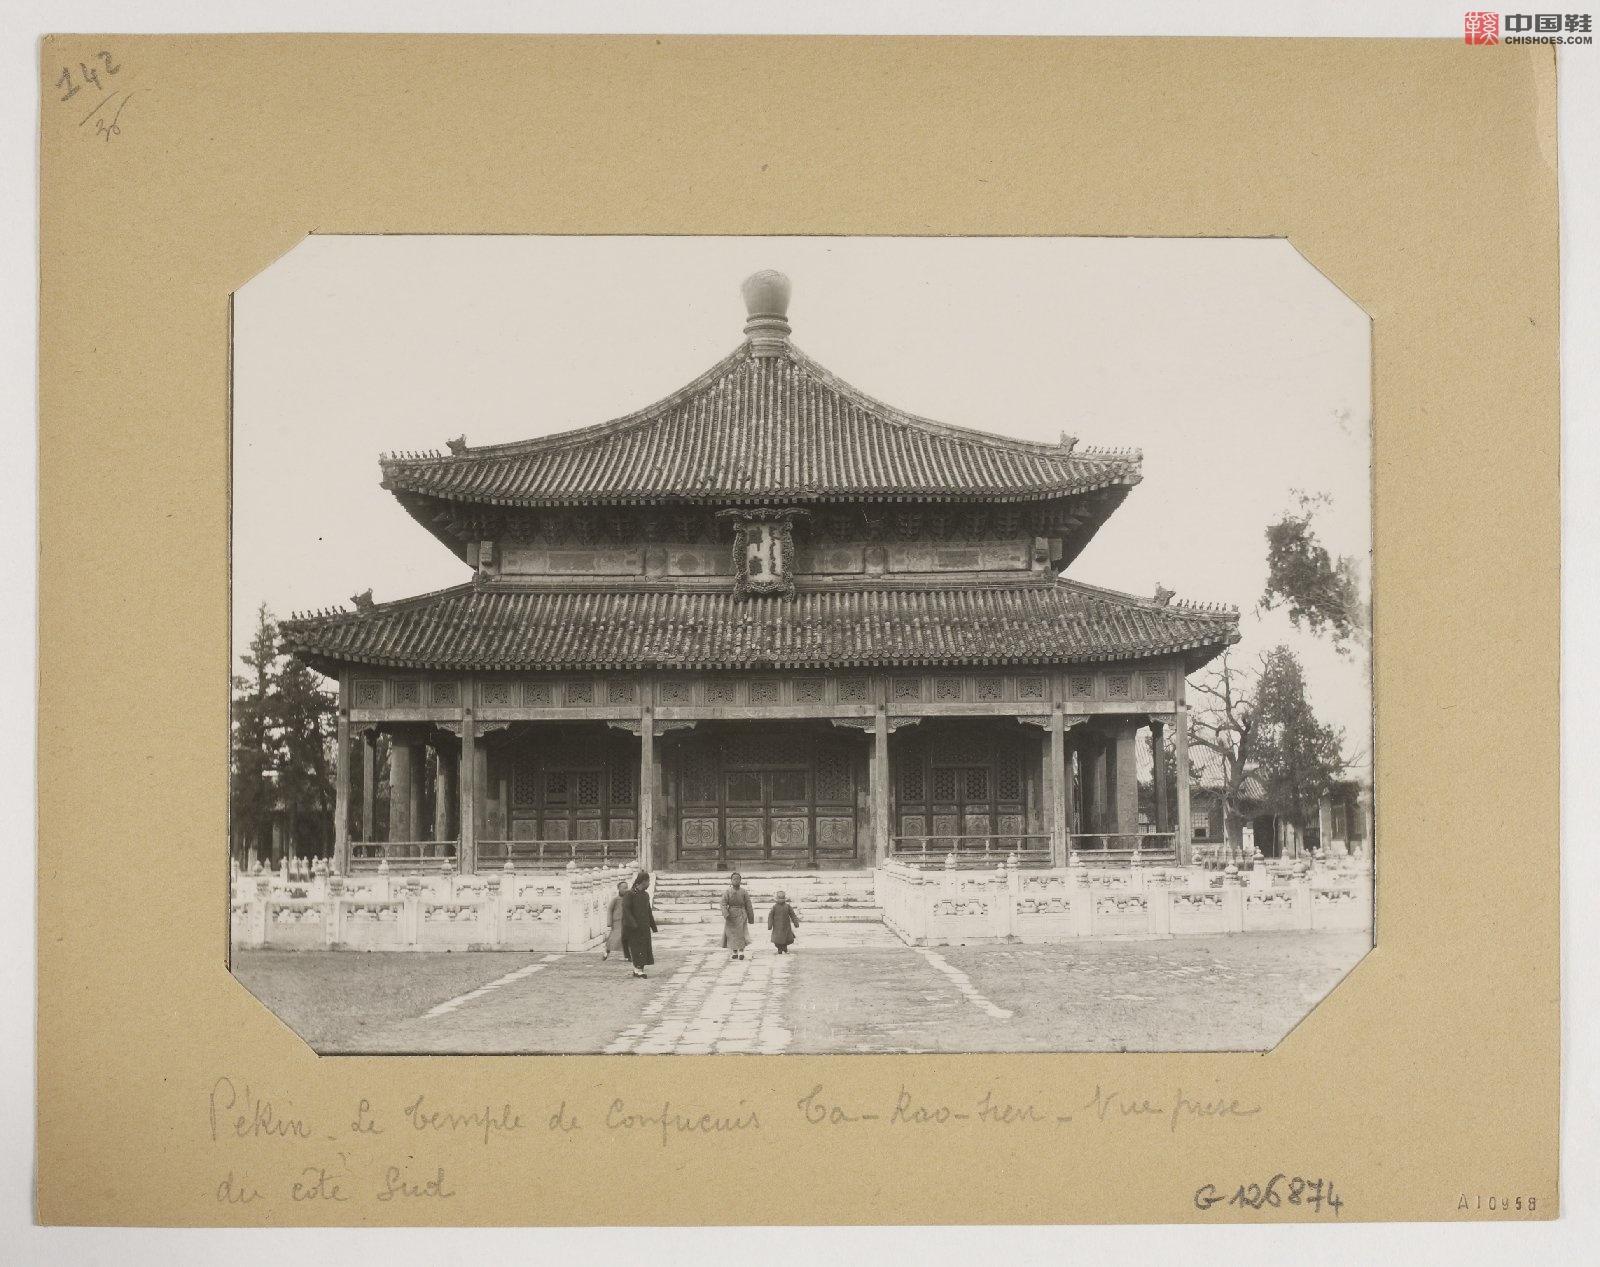 拉里贝的中国影像记录.415幅.By Firmin Laribe.1900-1910年_Page_357.jpg